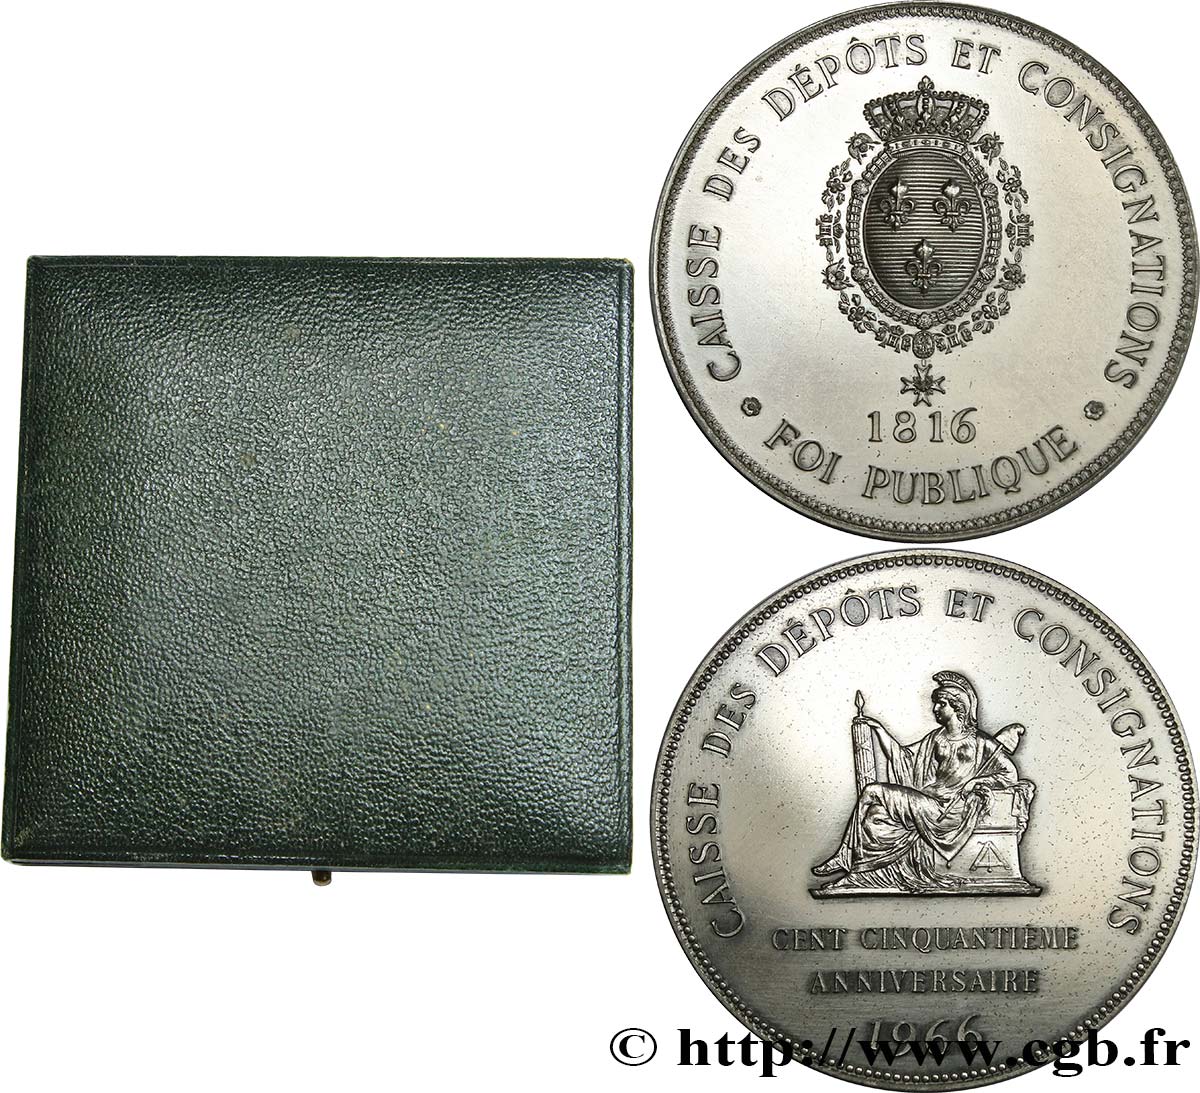 BANQUES - ÉTABLISSEMENTS DE CRÉDIT Médaille, 150e anniversaire de la Caisse des Dépôts et consignations SUP